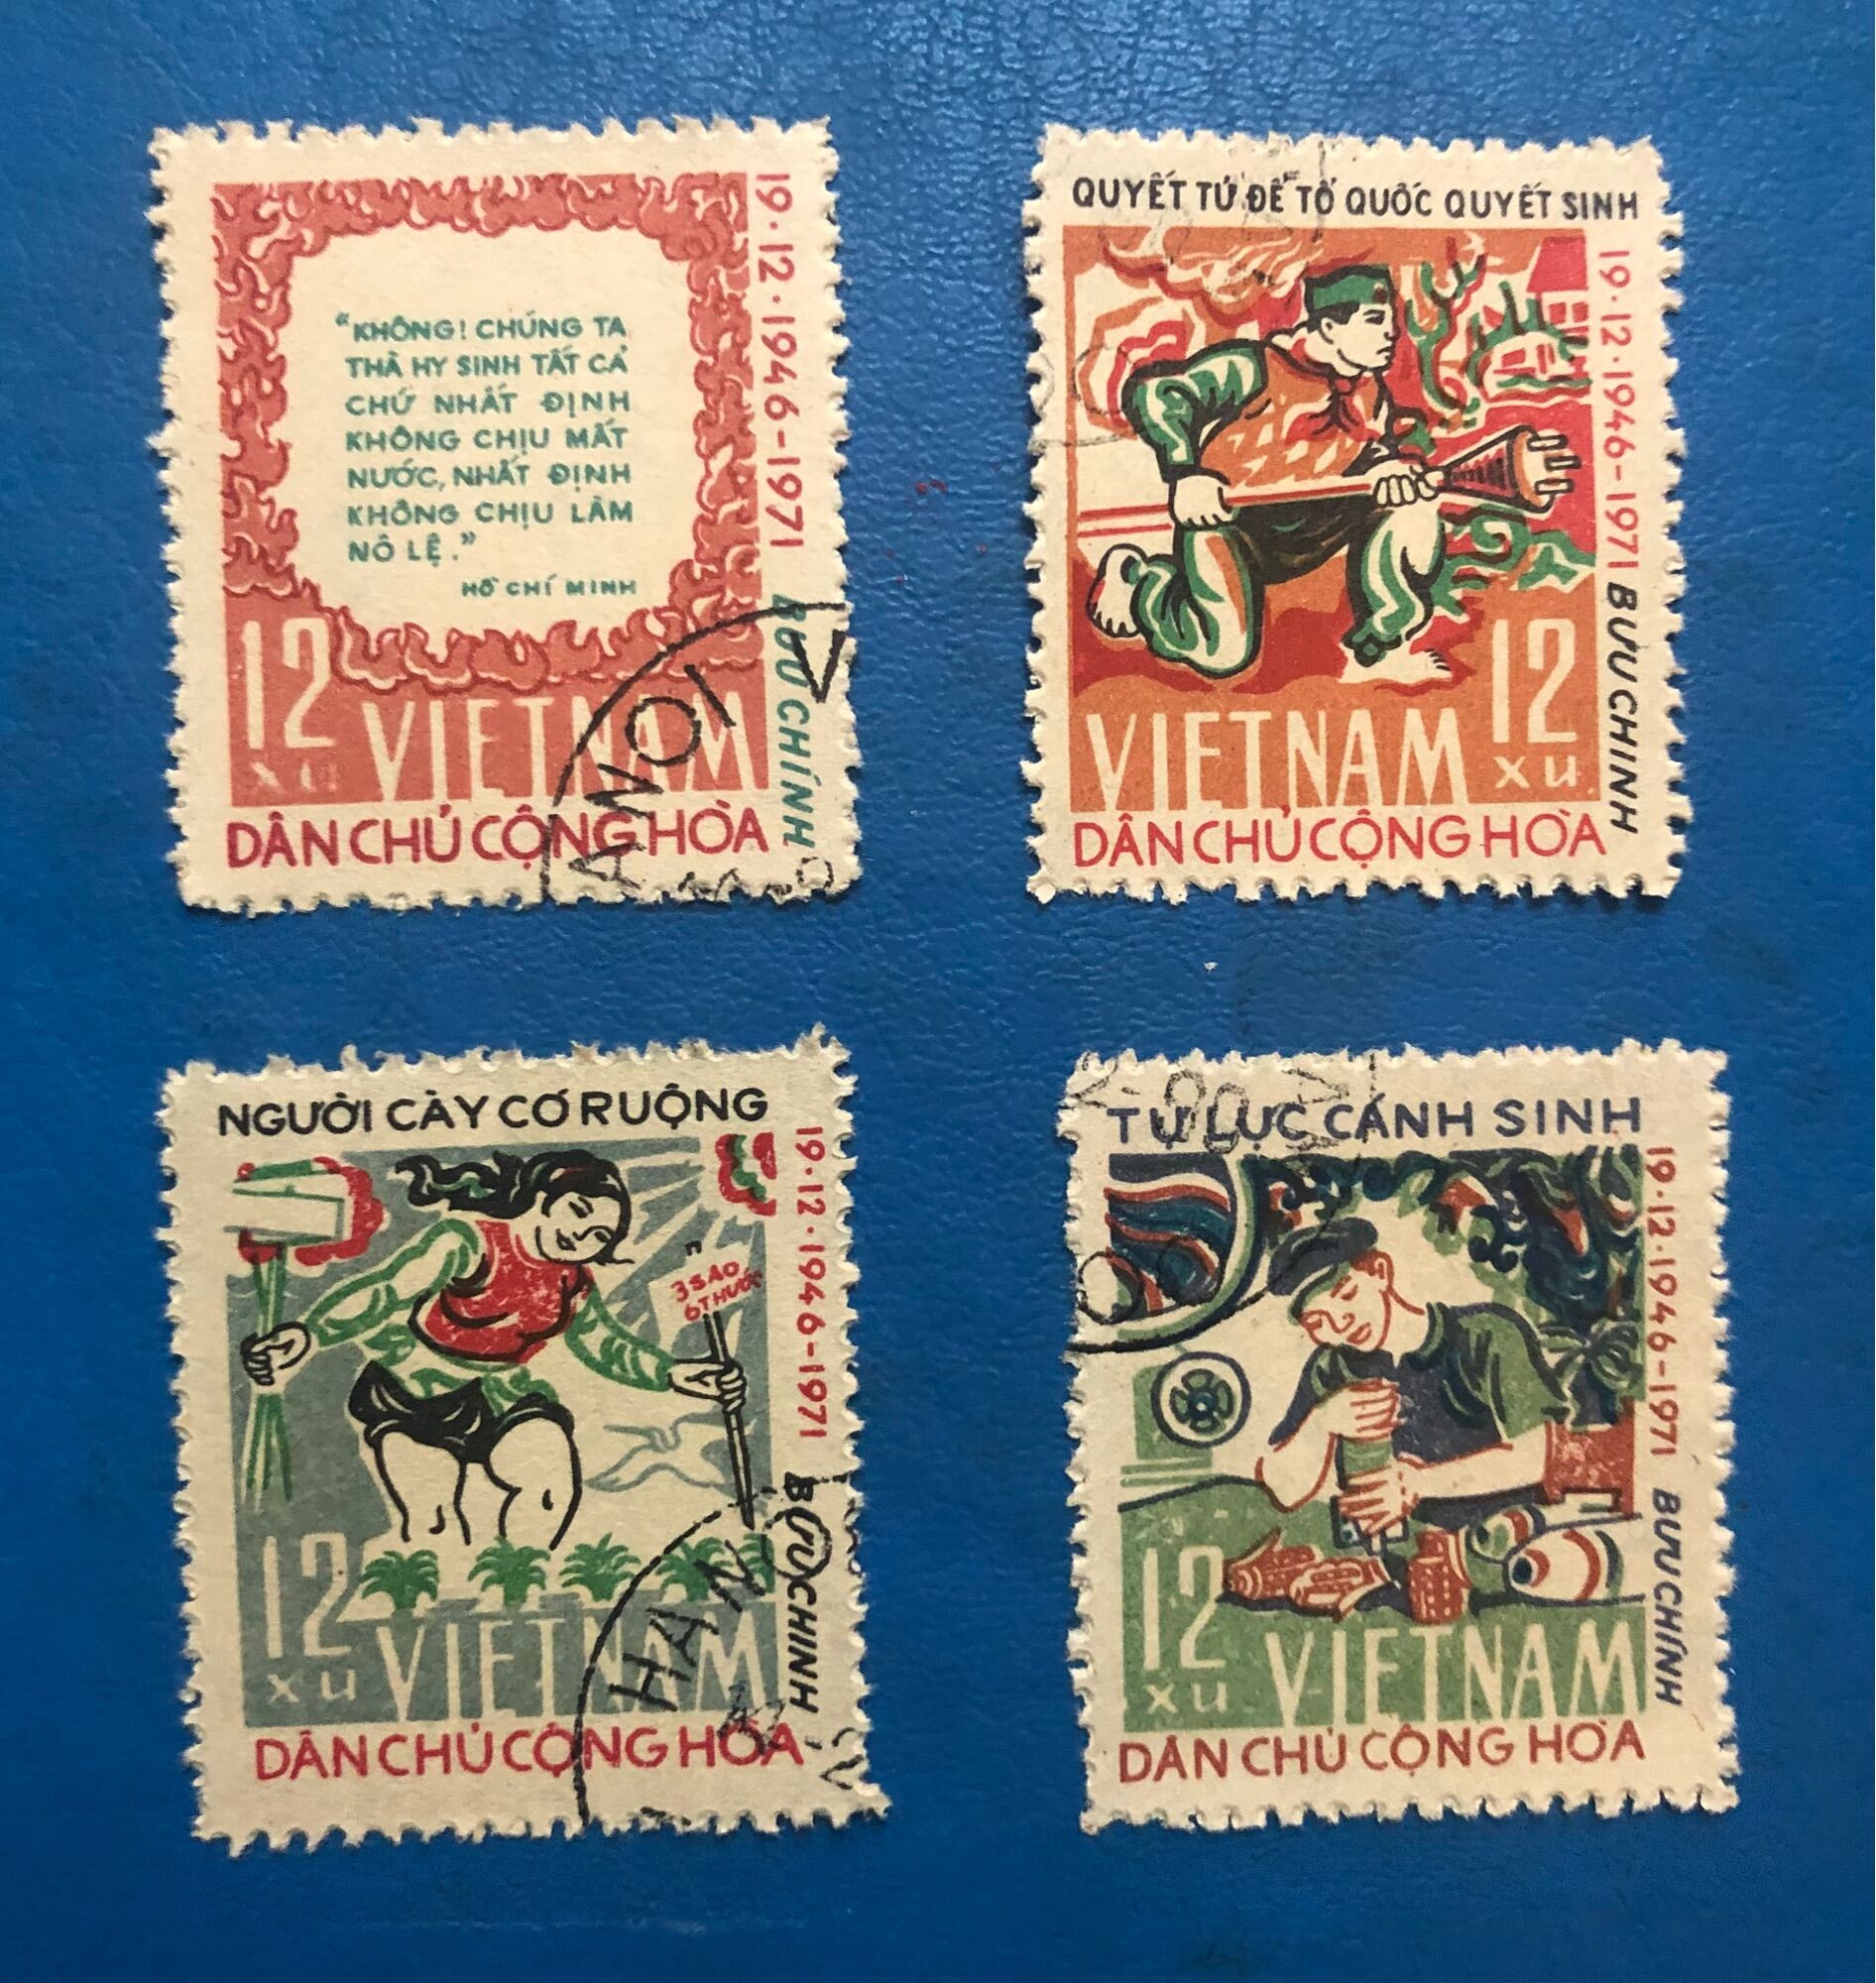 Bộ sưu tập tem trọn bộ 04 tem chủ đề kỷ niệm 25 năm toàn quốc kháng chiến